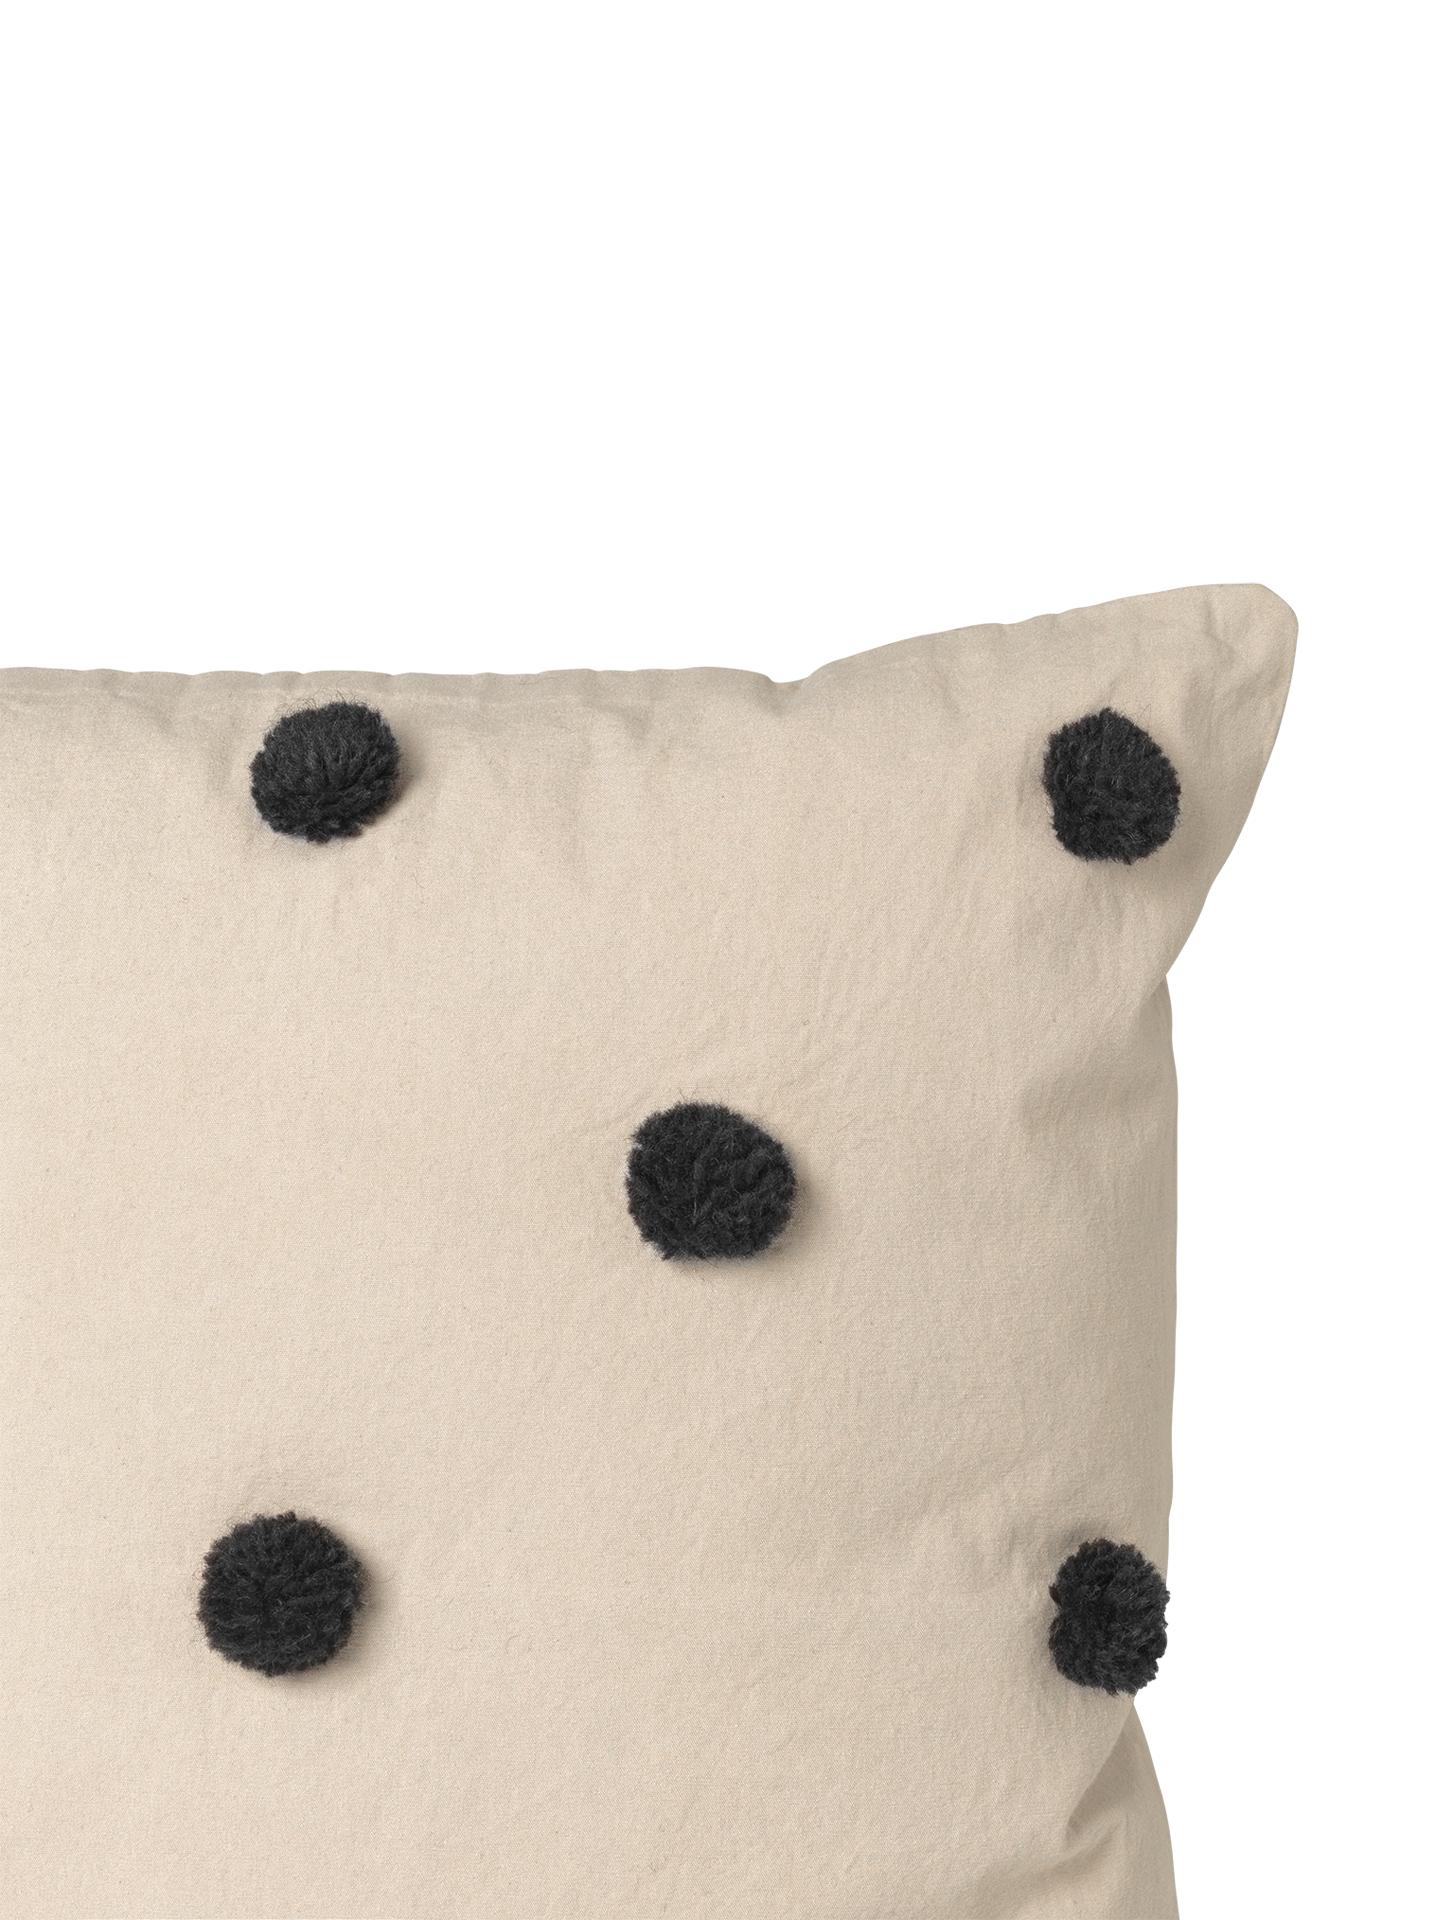 Dot Tufted Cushion - Sand/Black